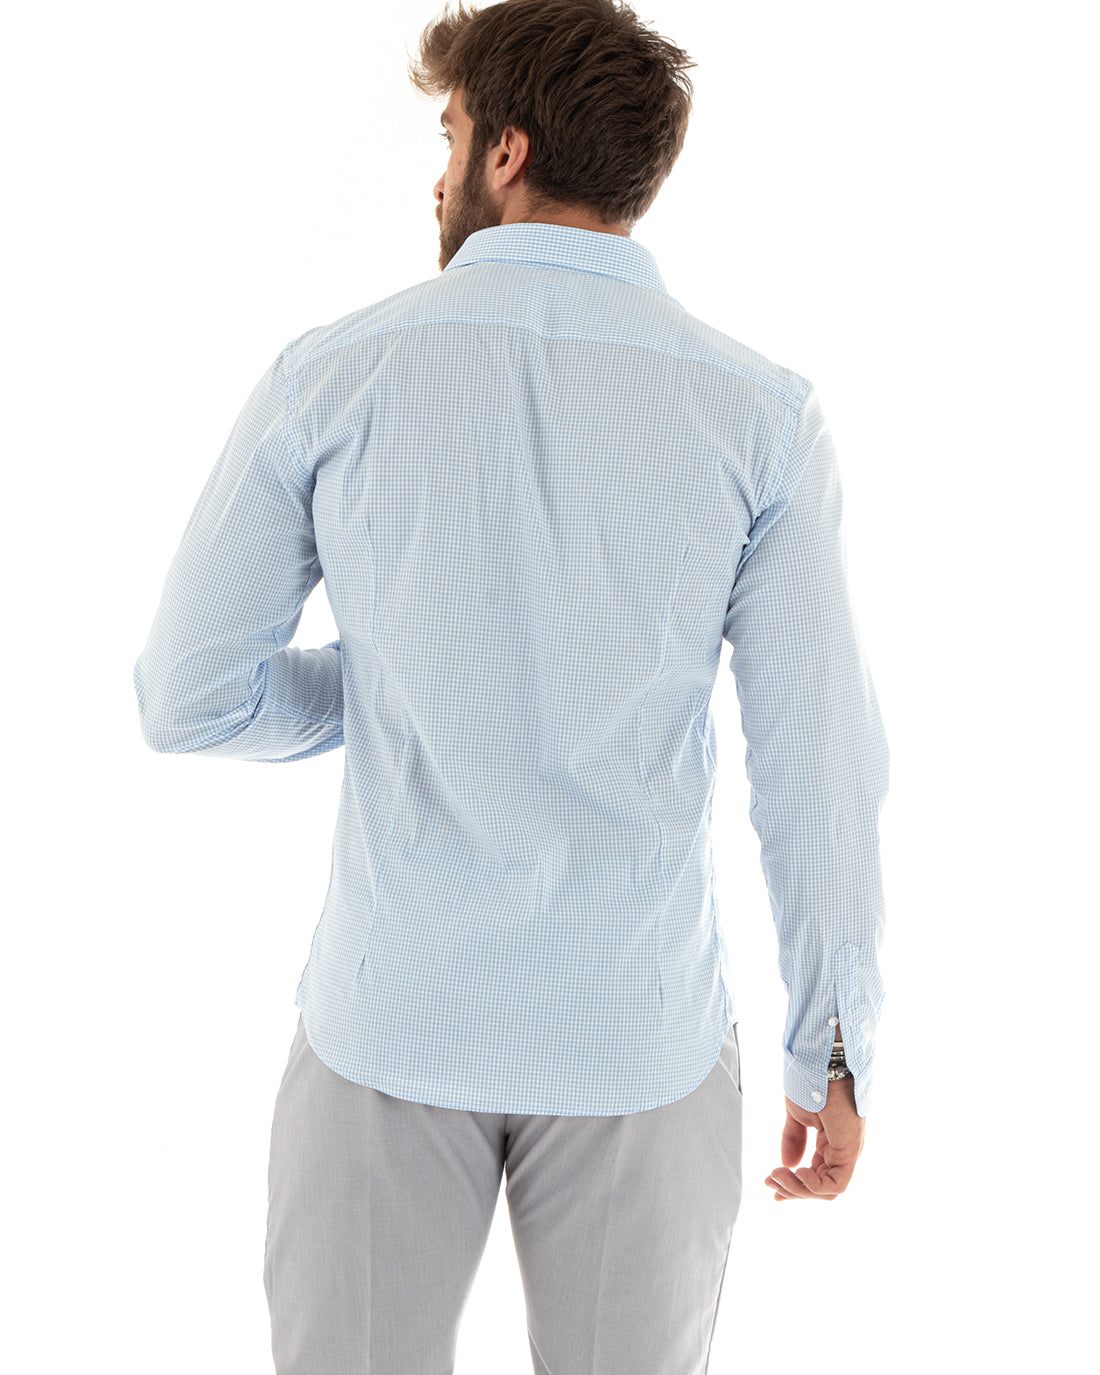 Camicia Uomo Con Colletto Francese Manica Lunga Quadretti Azzurro GIOSAL-C2746A